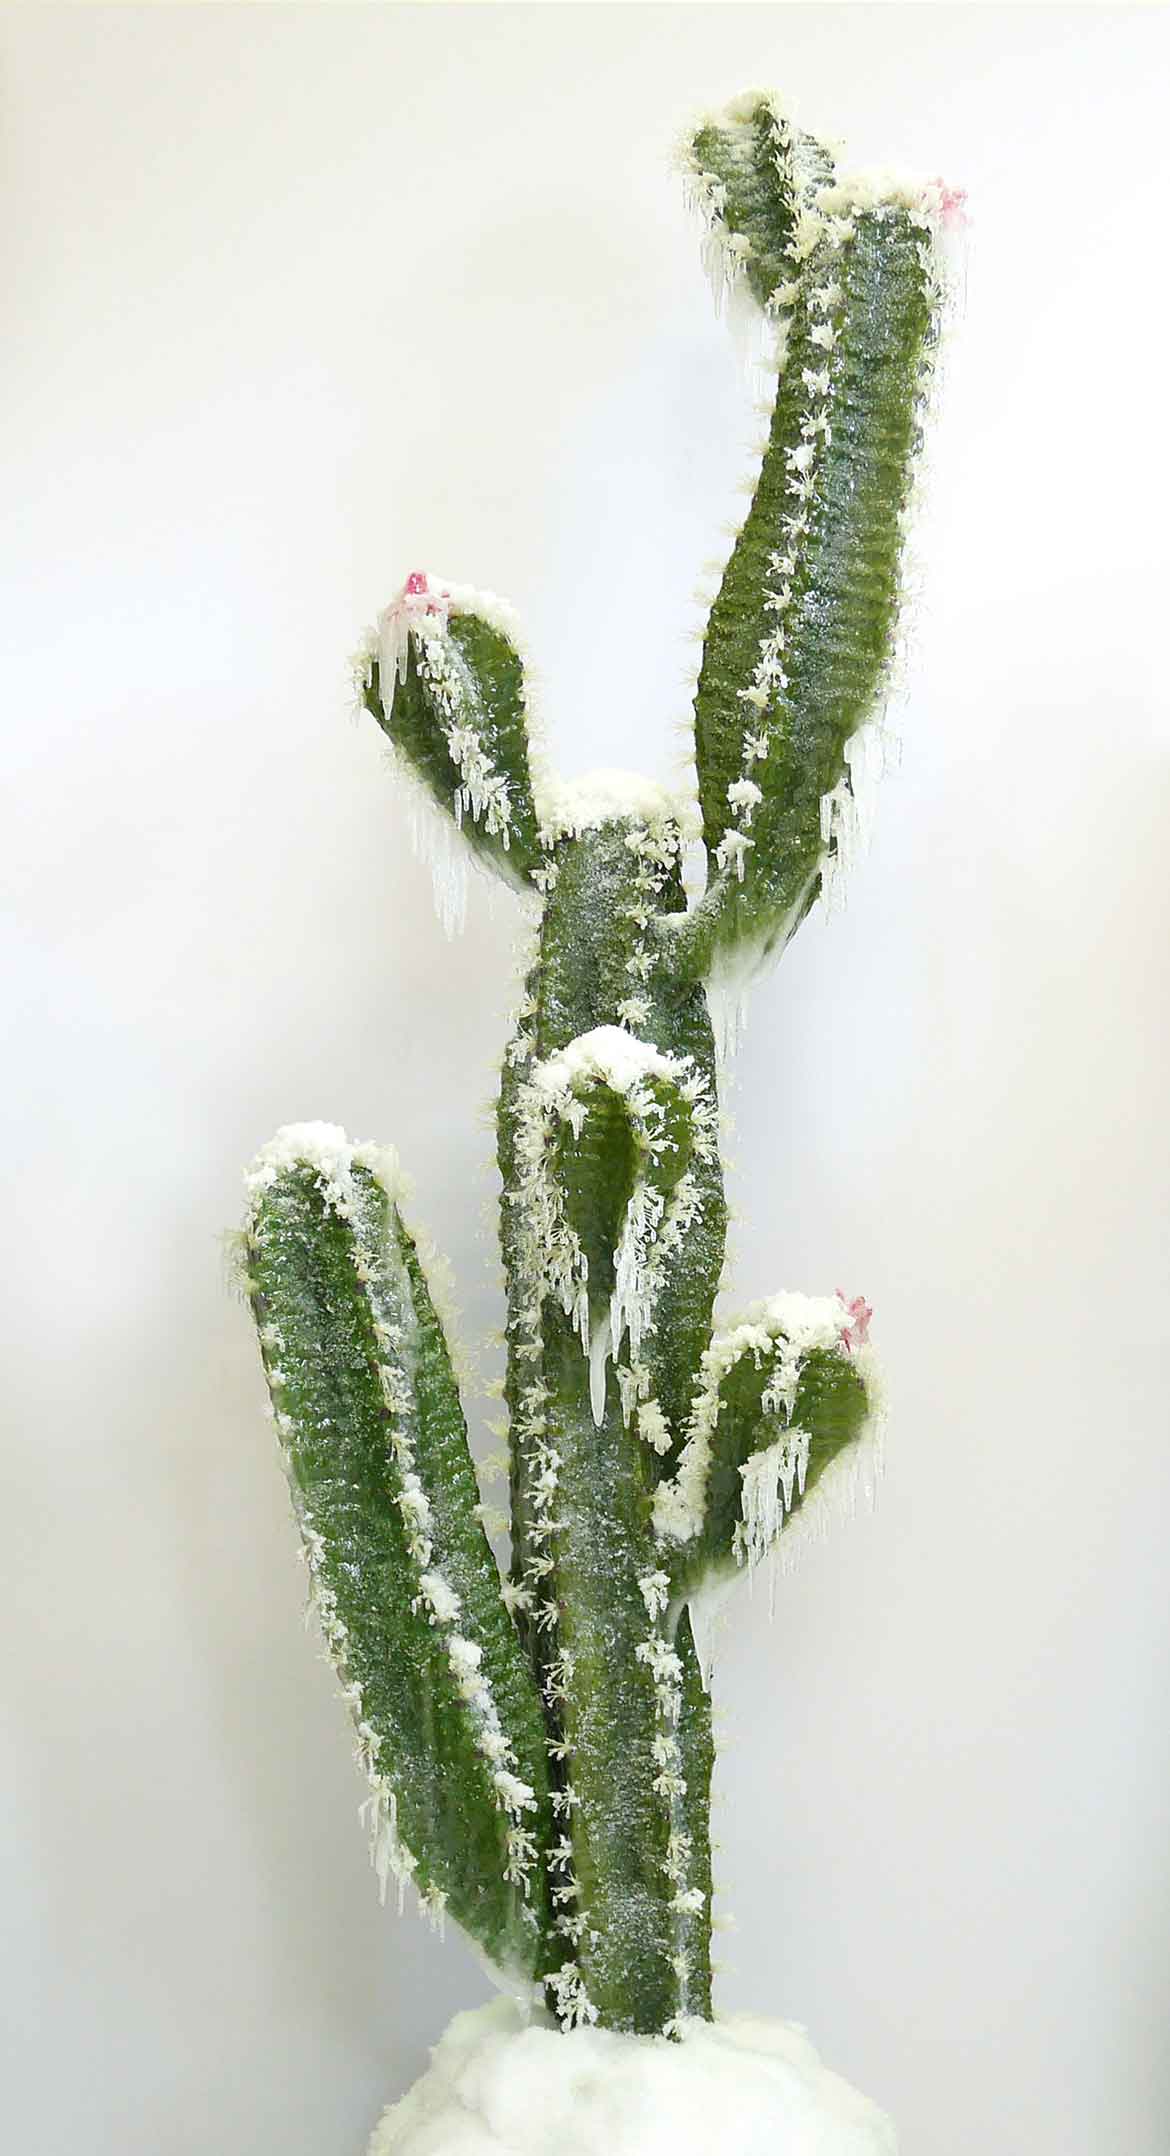 © Laurent Pernot, Série Still Life, Cactus, Résines, bois, mousse, neige et givre artificiels, vernis, 175 x 90 x 70 cm, 2014